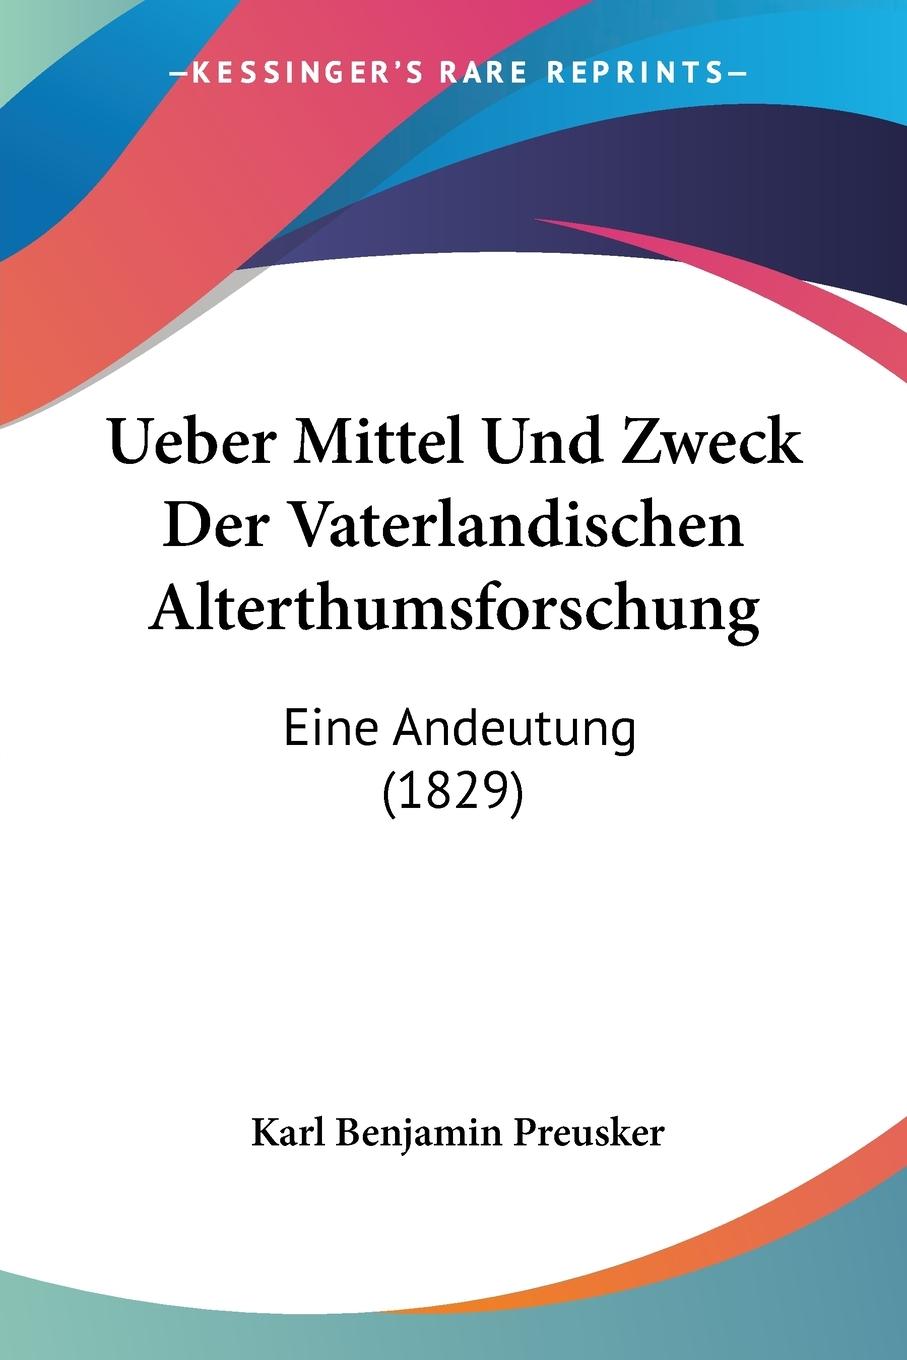 Ueber Mittel Und Zweck Der Vaterlandischen Alterthumsforschung - Preusker, Karl Benjamin